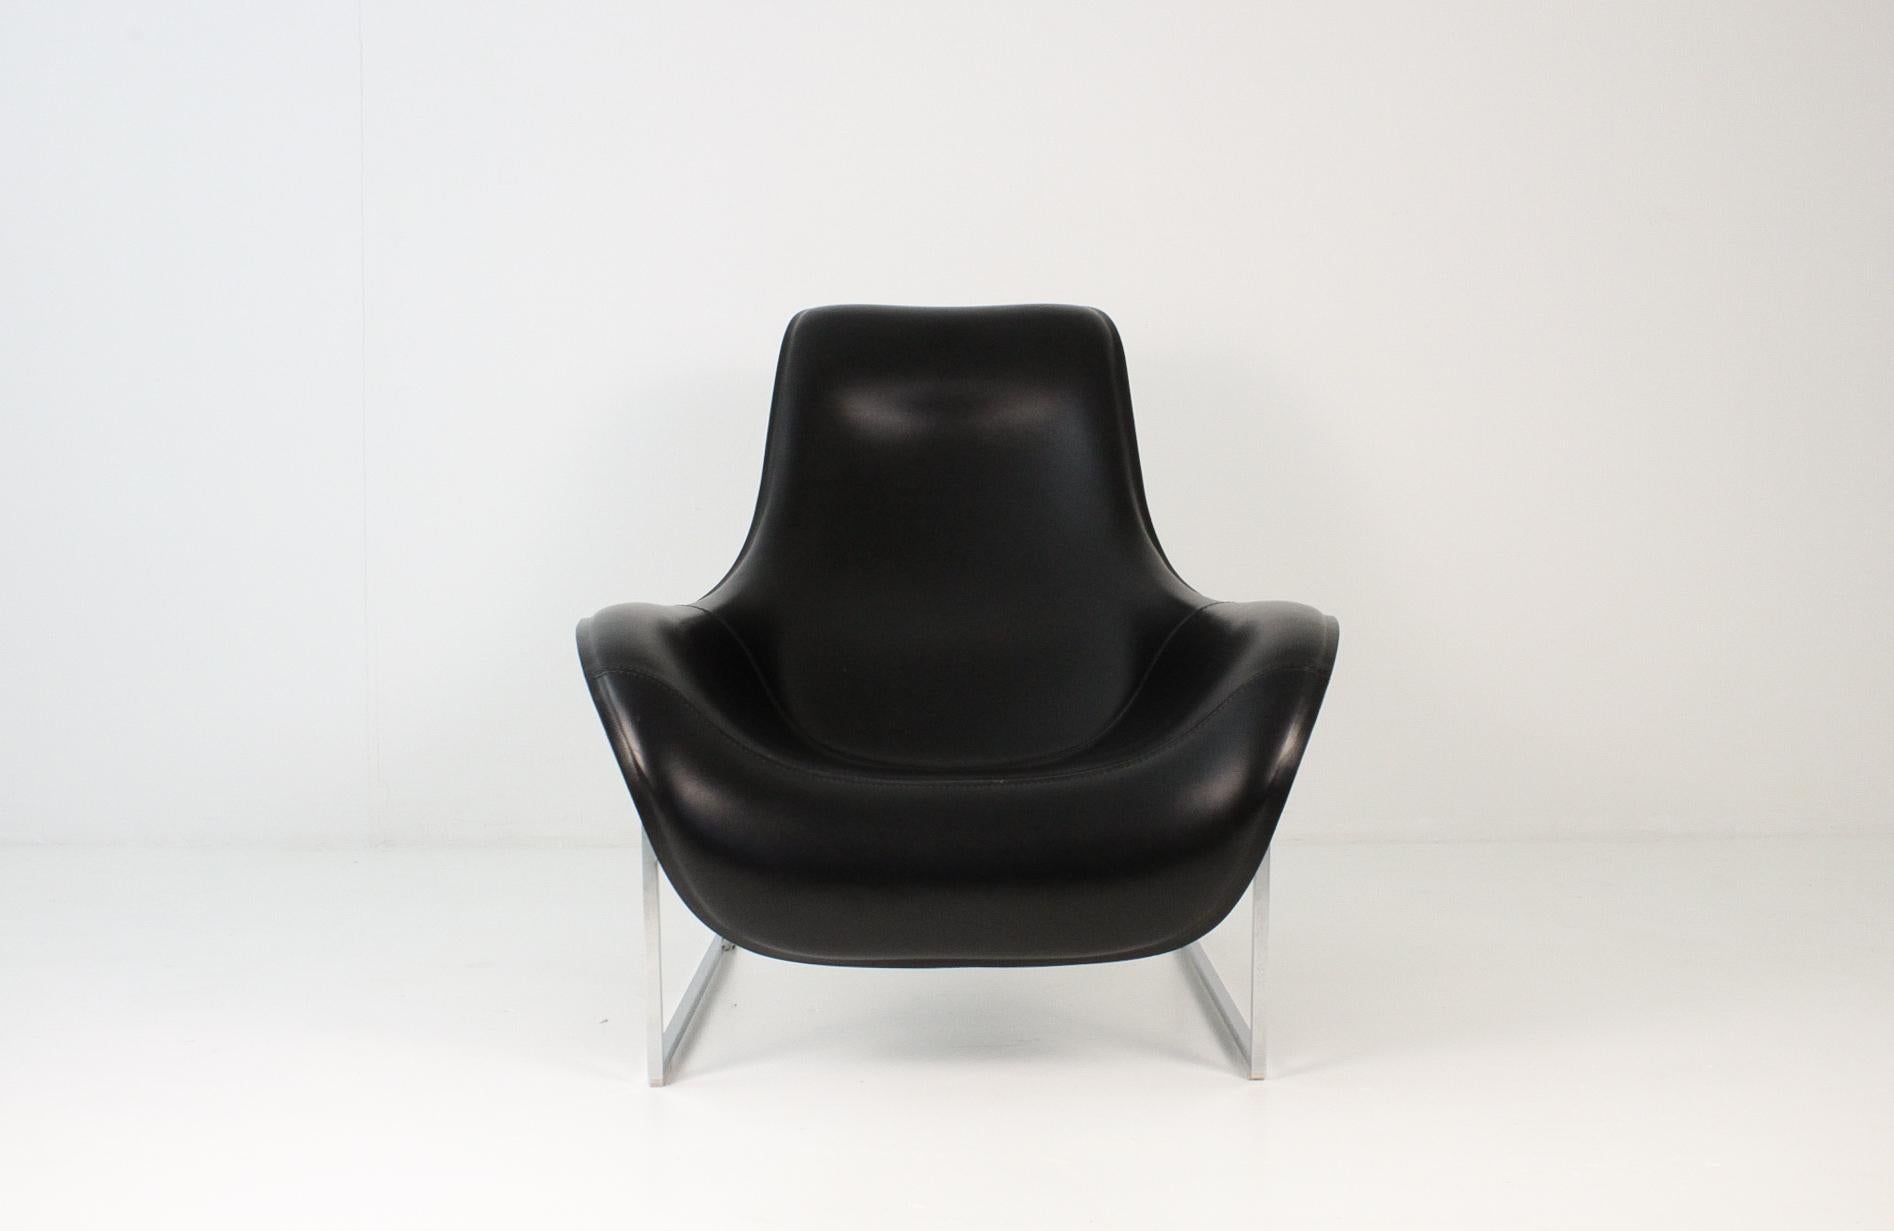 Mart Lounge Chair, entworfen von Antonio Citterio für B&B Italia. Mart hat eine lederne Silhouette, die mit ihrer verstellbaren Sitzposition die Idee der Entspannung vermittelt. Die schlanke, hohle Form ist aus Fiberglas gefertigt und dank des für